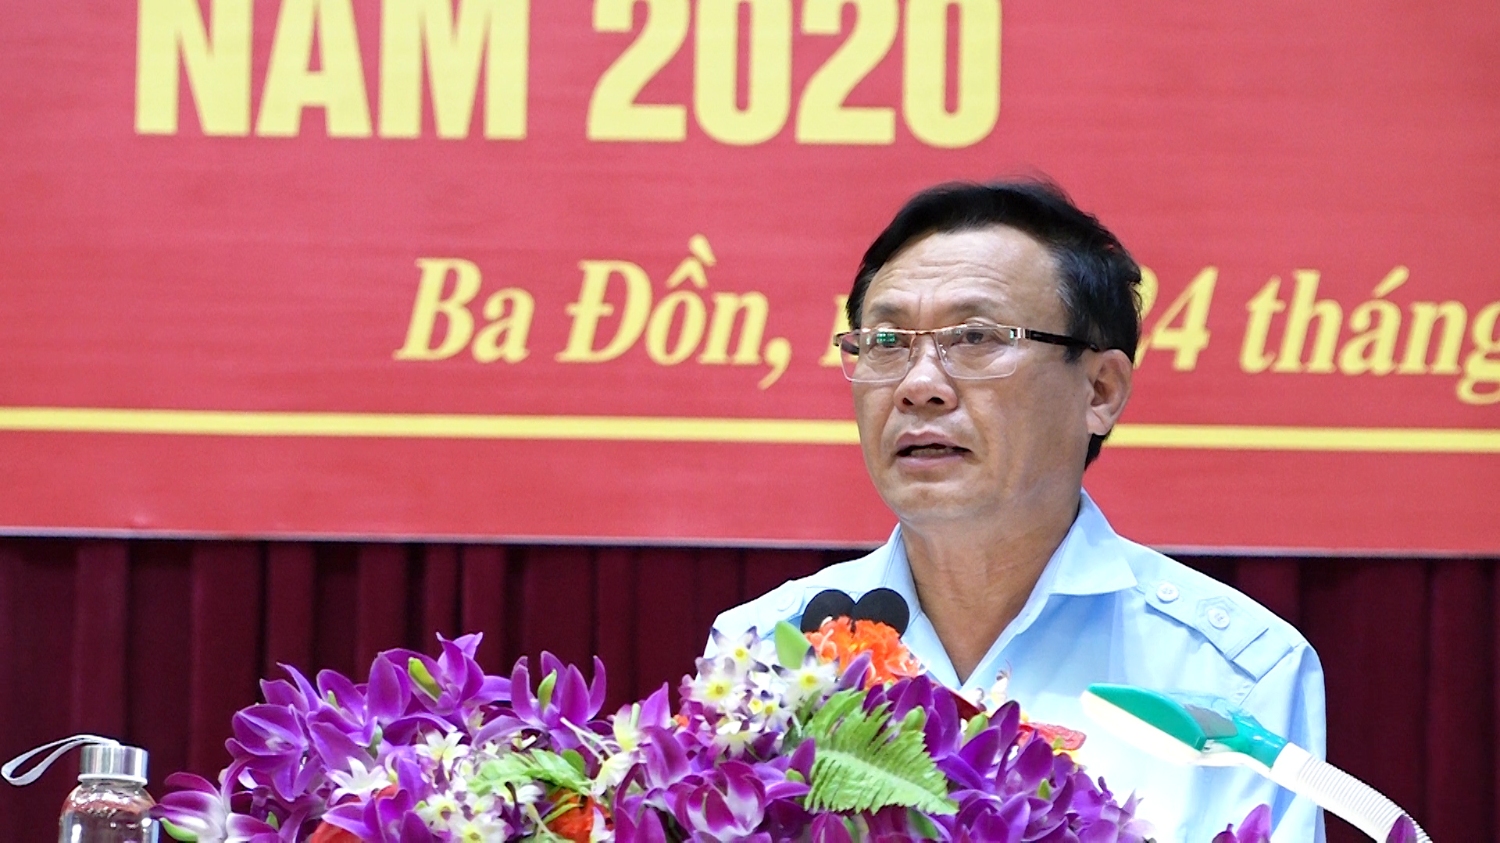 Đồng chí Phạm Duy Quang Phó Bí thư thường trực Thị ủy, Chủ tịch HĐND thị xã Ba Đồn phát biểu tại hội nghị